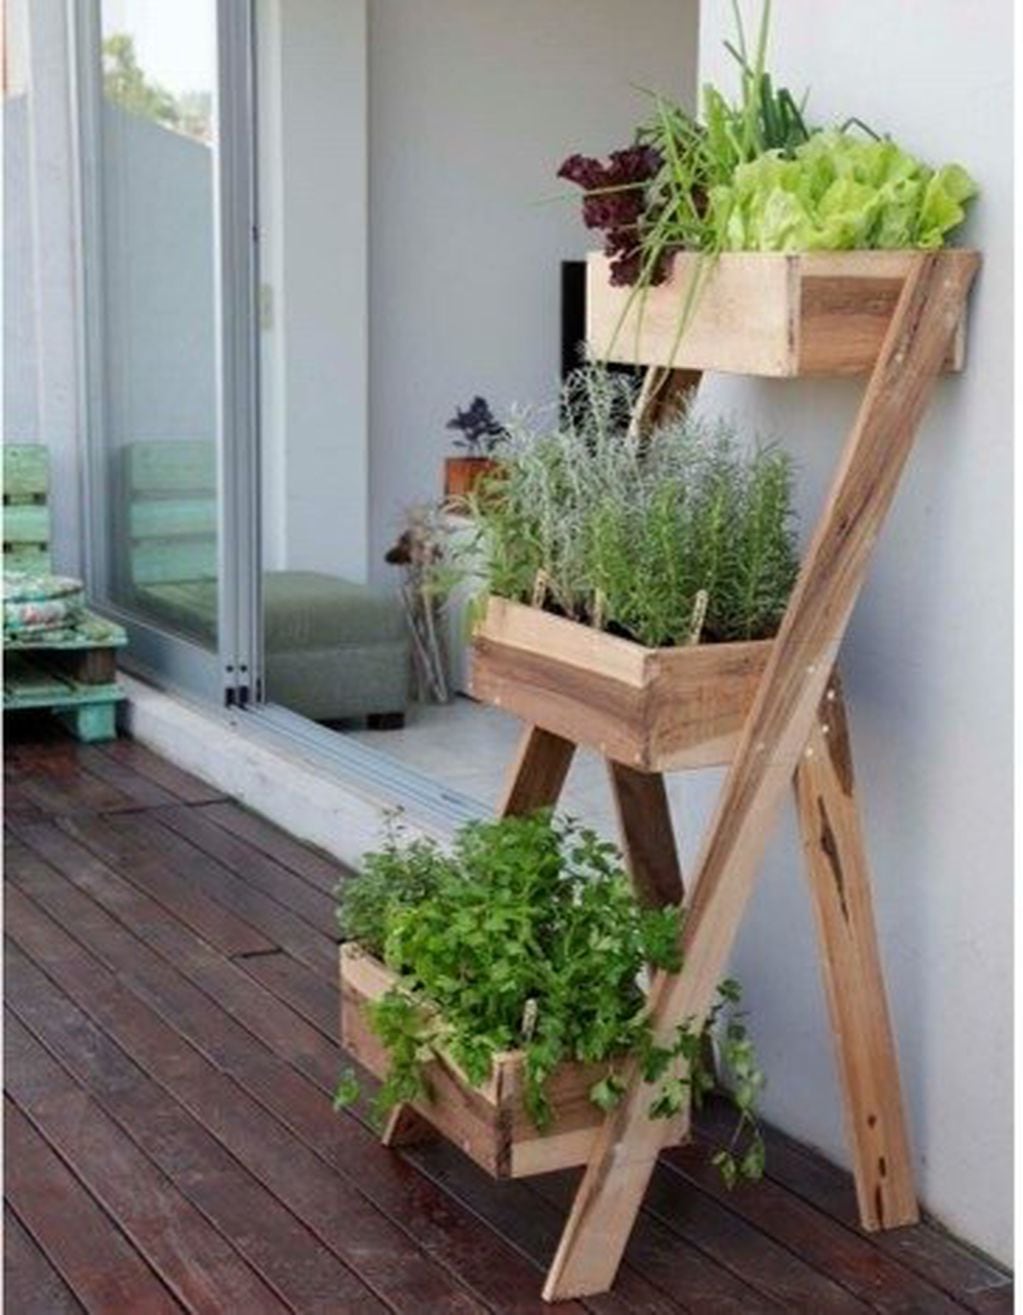 Las huertas caseras son cada vez más frecuentes en los hogares. Buscar estanterías diseñadas para plantas aromáticas y hortalizas es lo más conveniente y accesible.